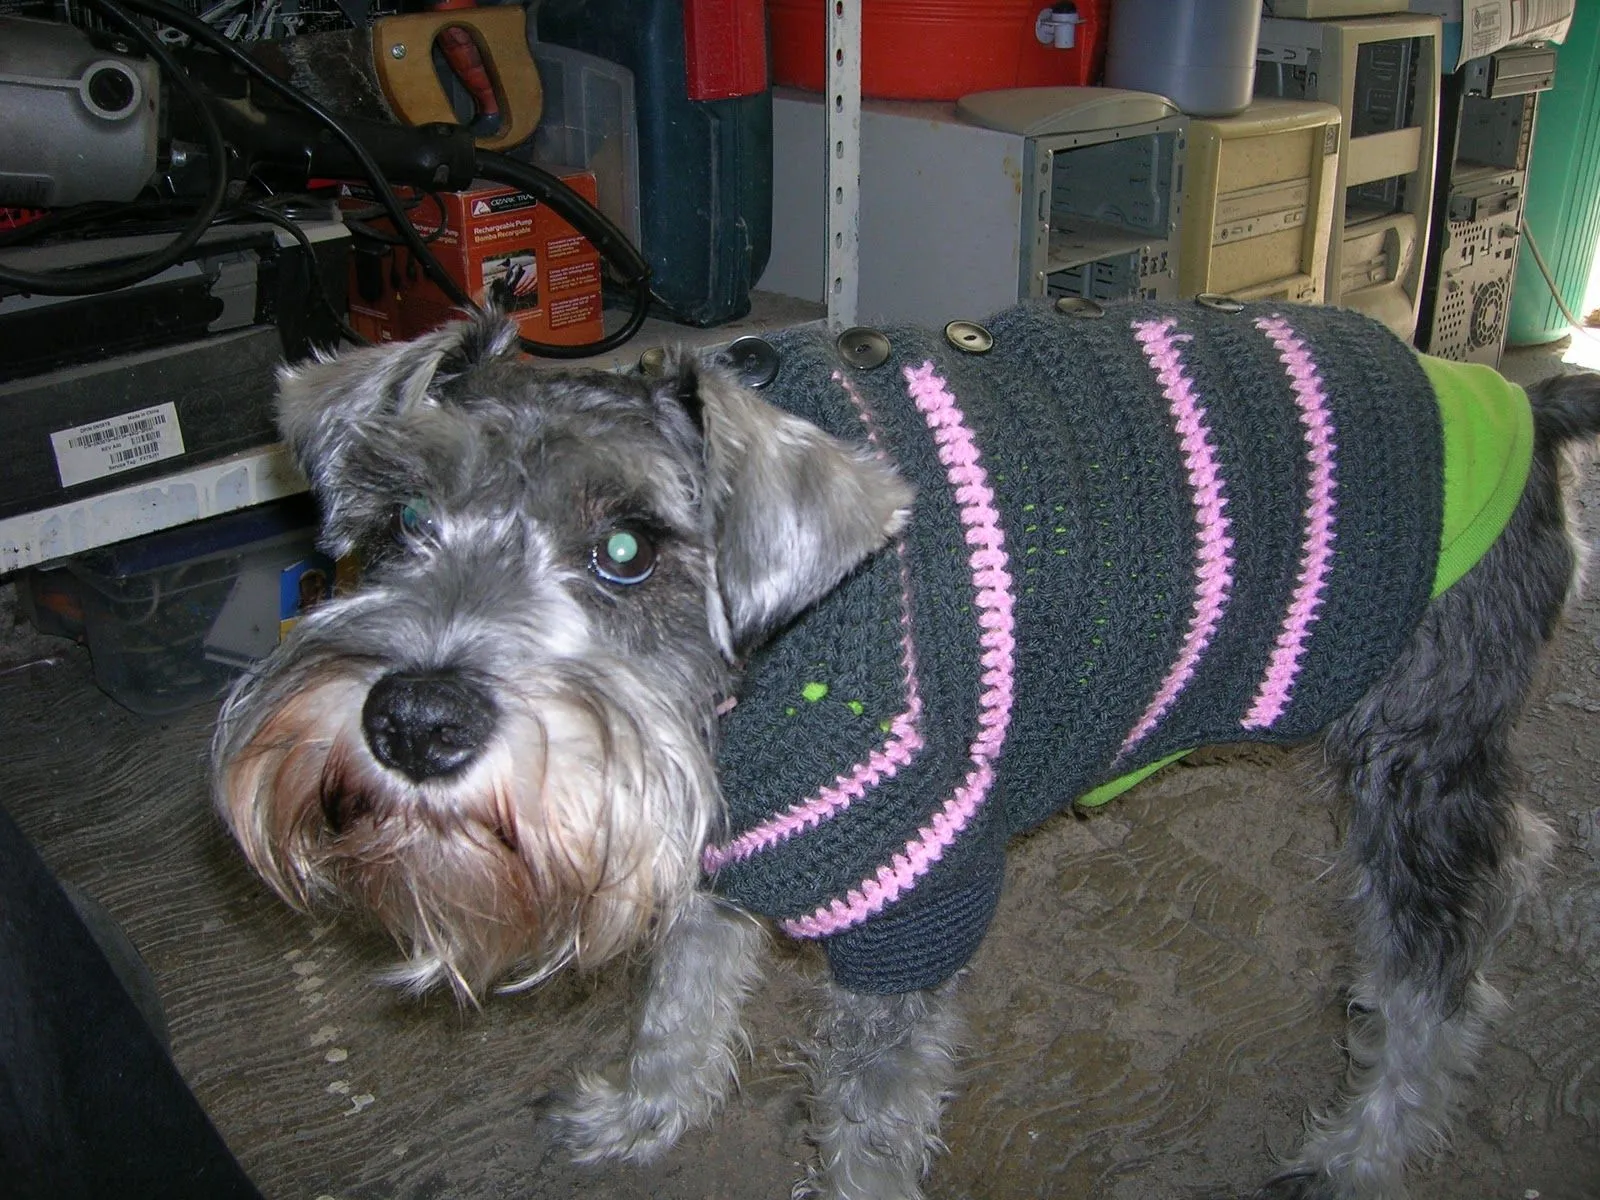 Mis labores en Crochet: Sueter para perro